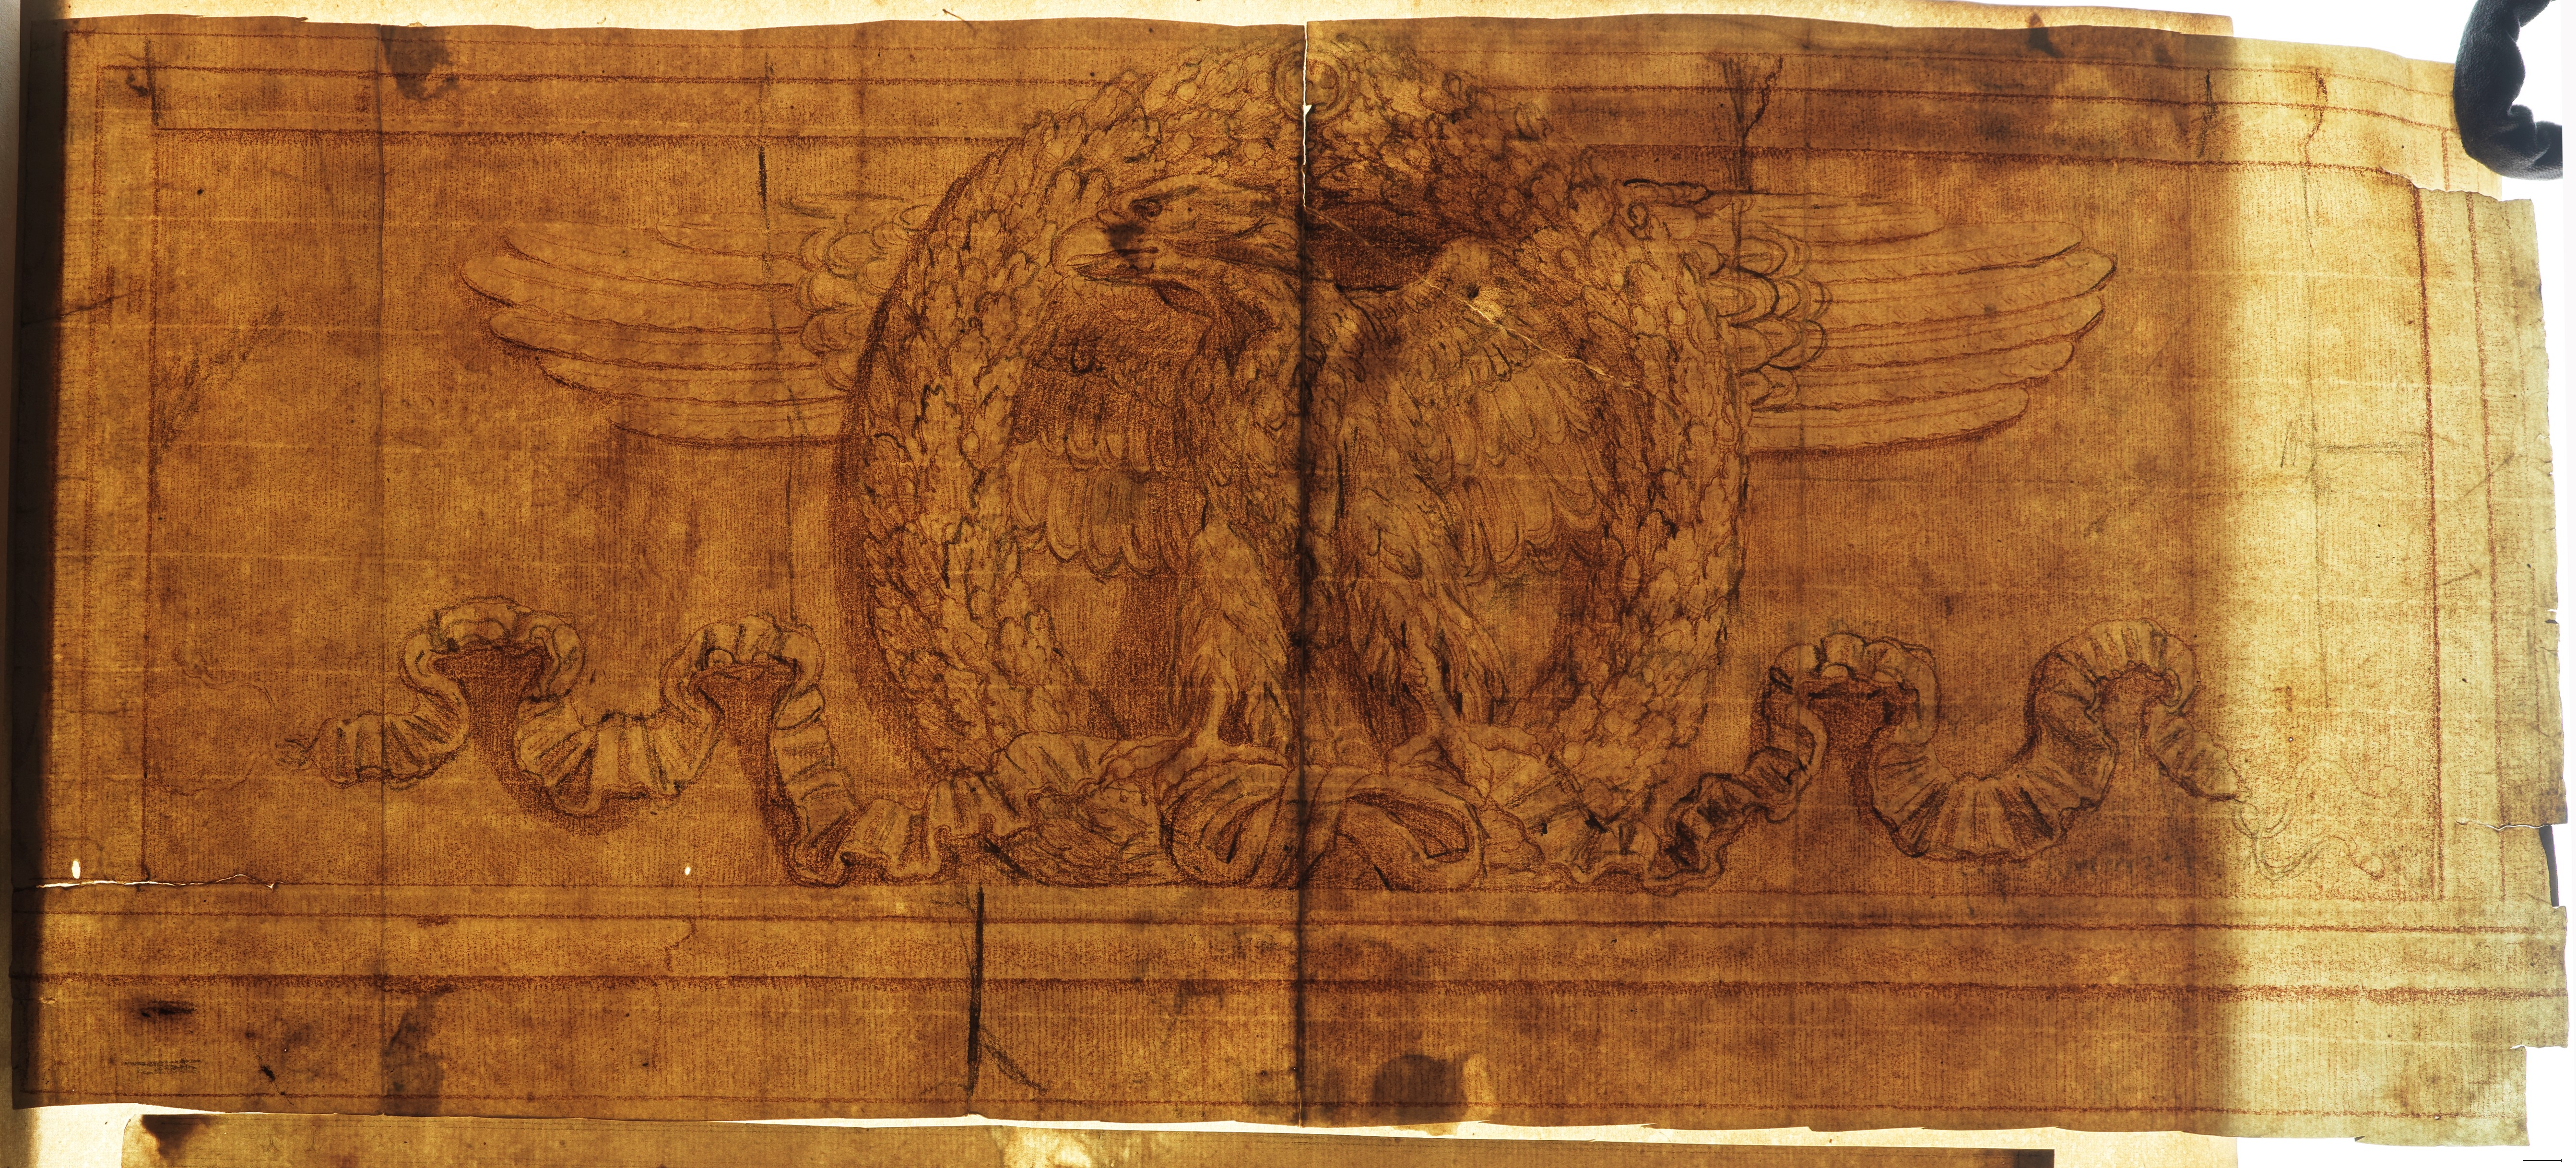 Durchlicht-Aufnahme Rötel- und Kreidezeichnung eines Adlerreliefs aus der Vorhalle der Kirche Santi Apostoli in Rom